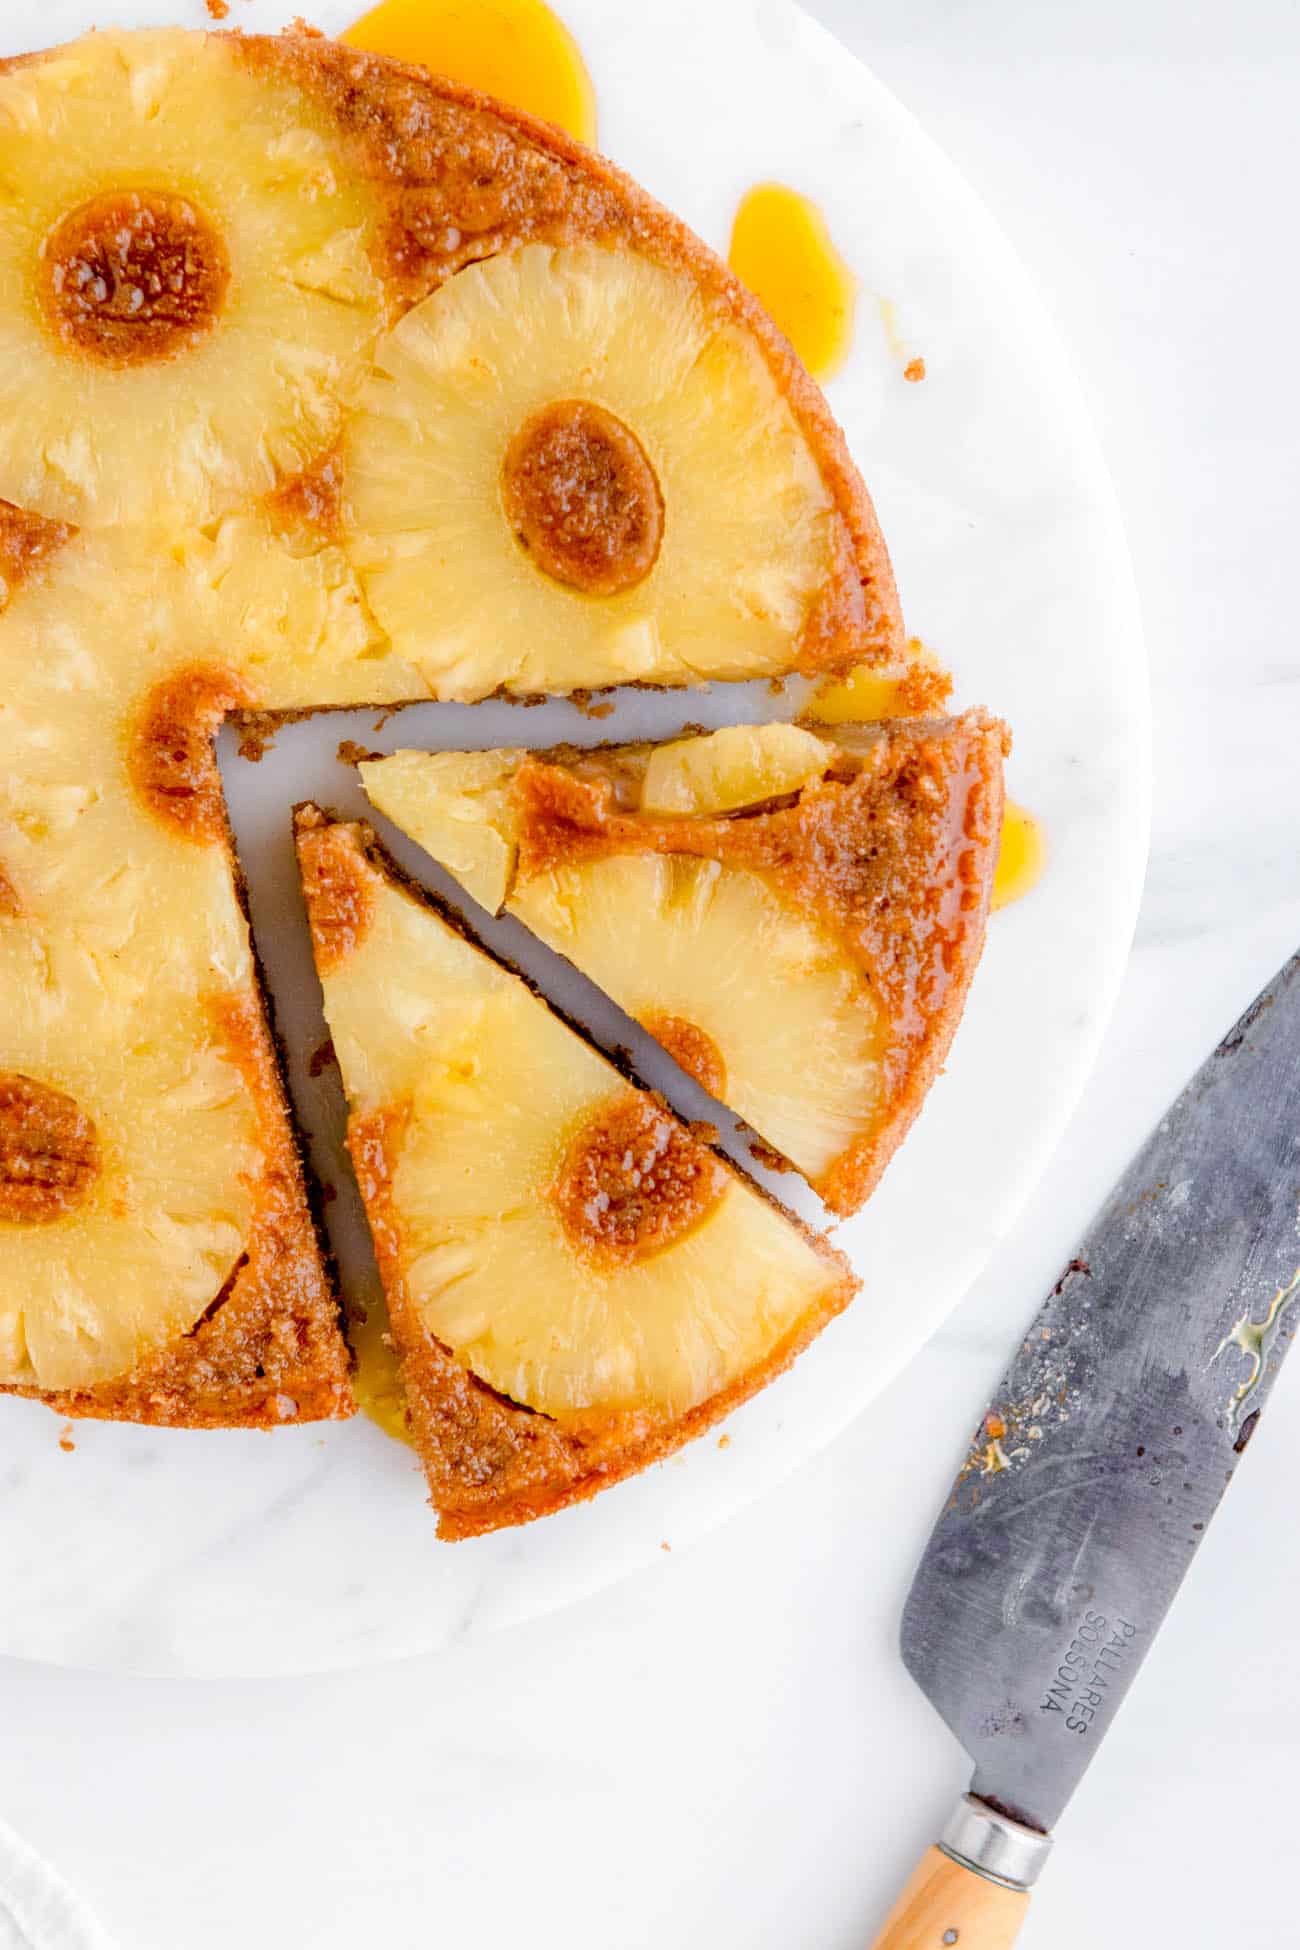 slices of easy gluten free eggless vegan pineapple upside down cake recipe on a cake platter